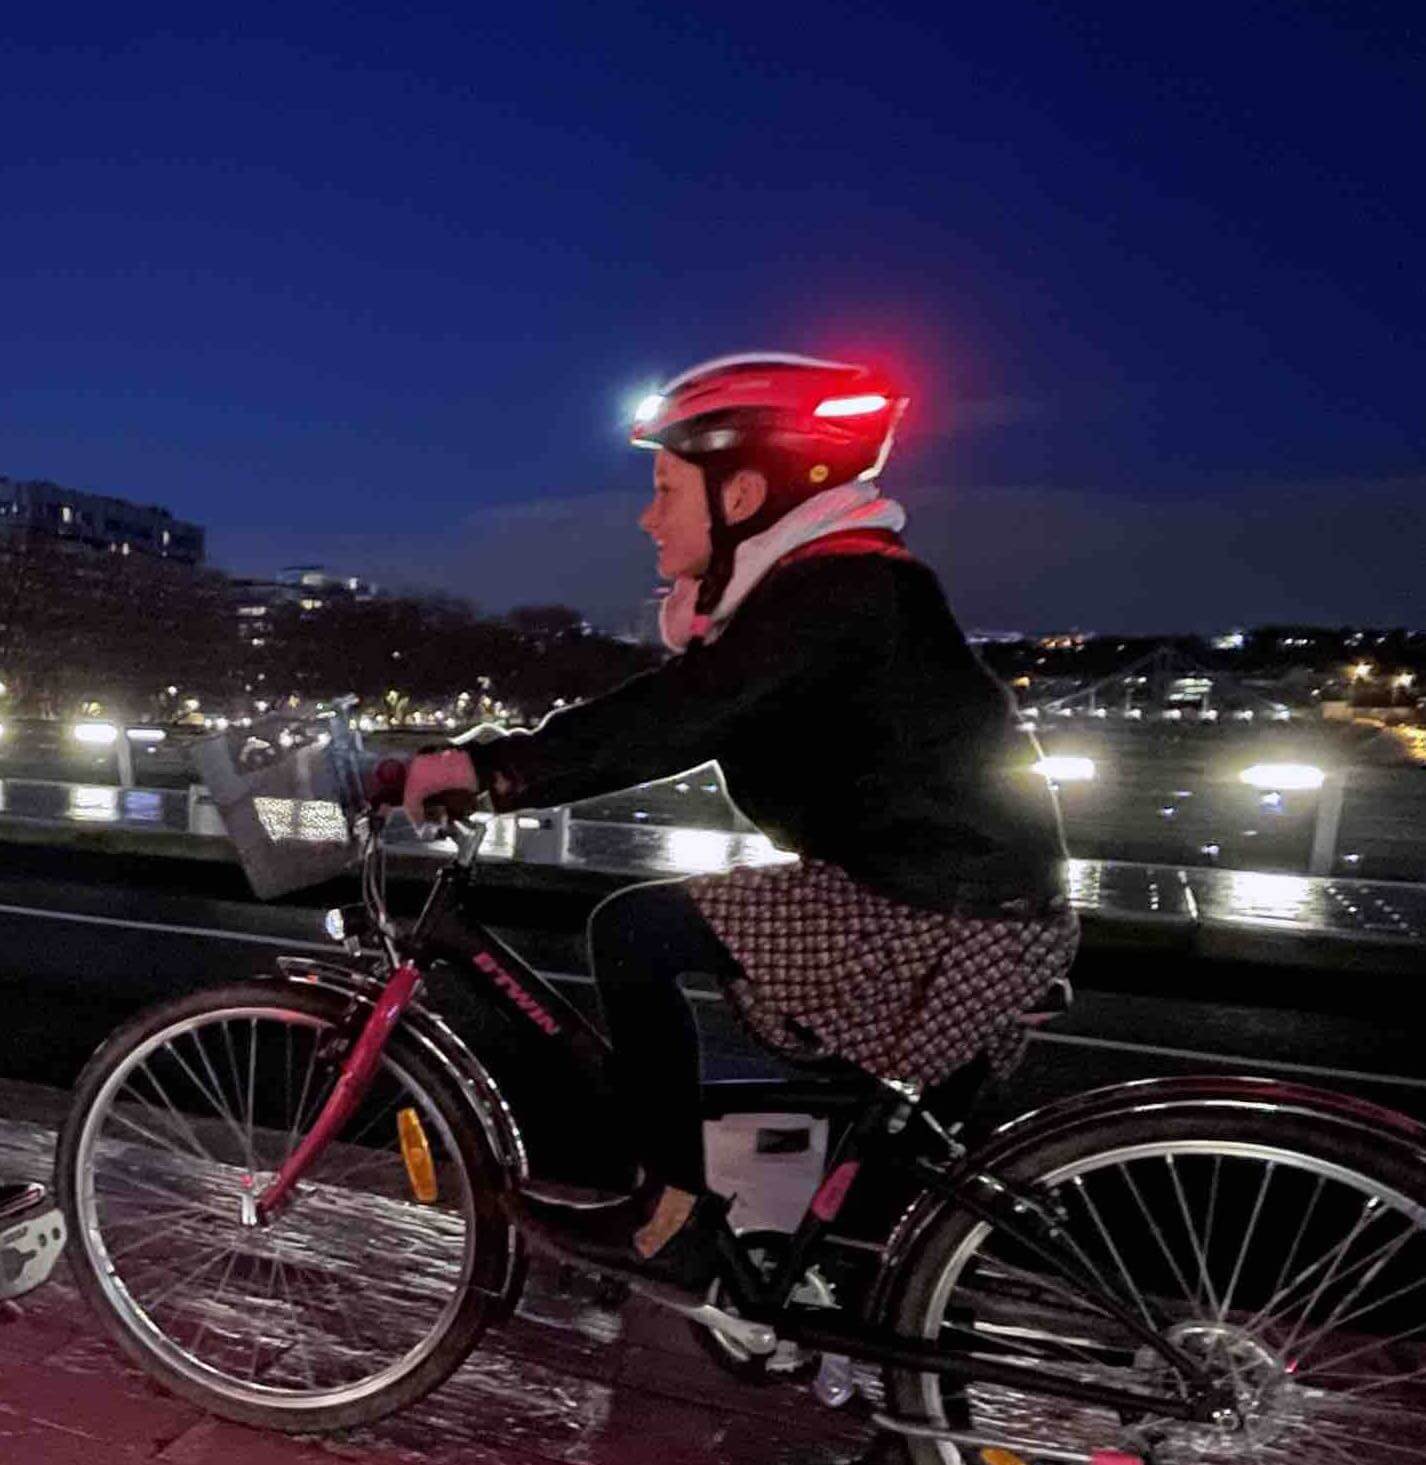 Éclairage velo – Votre éclairage vélo à prix canon !